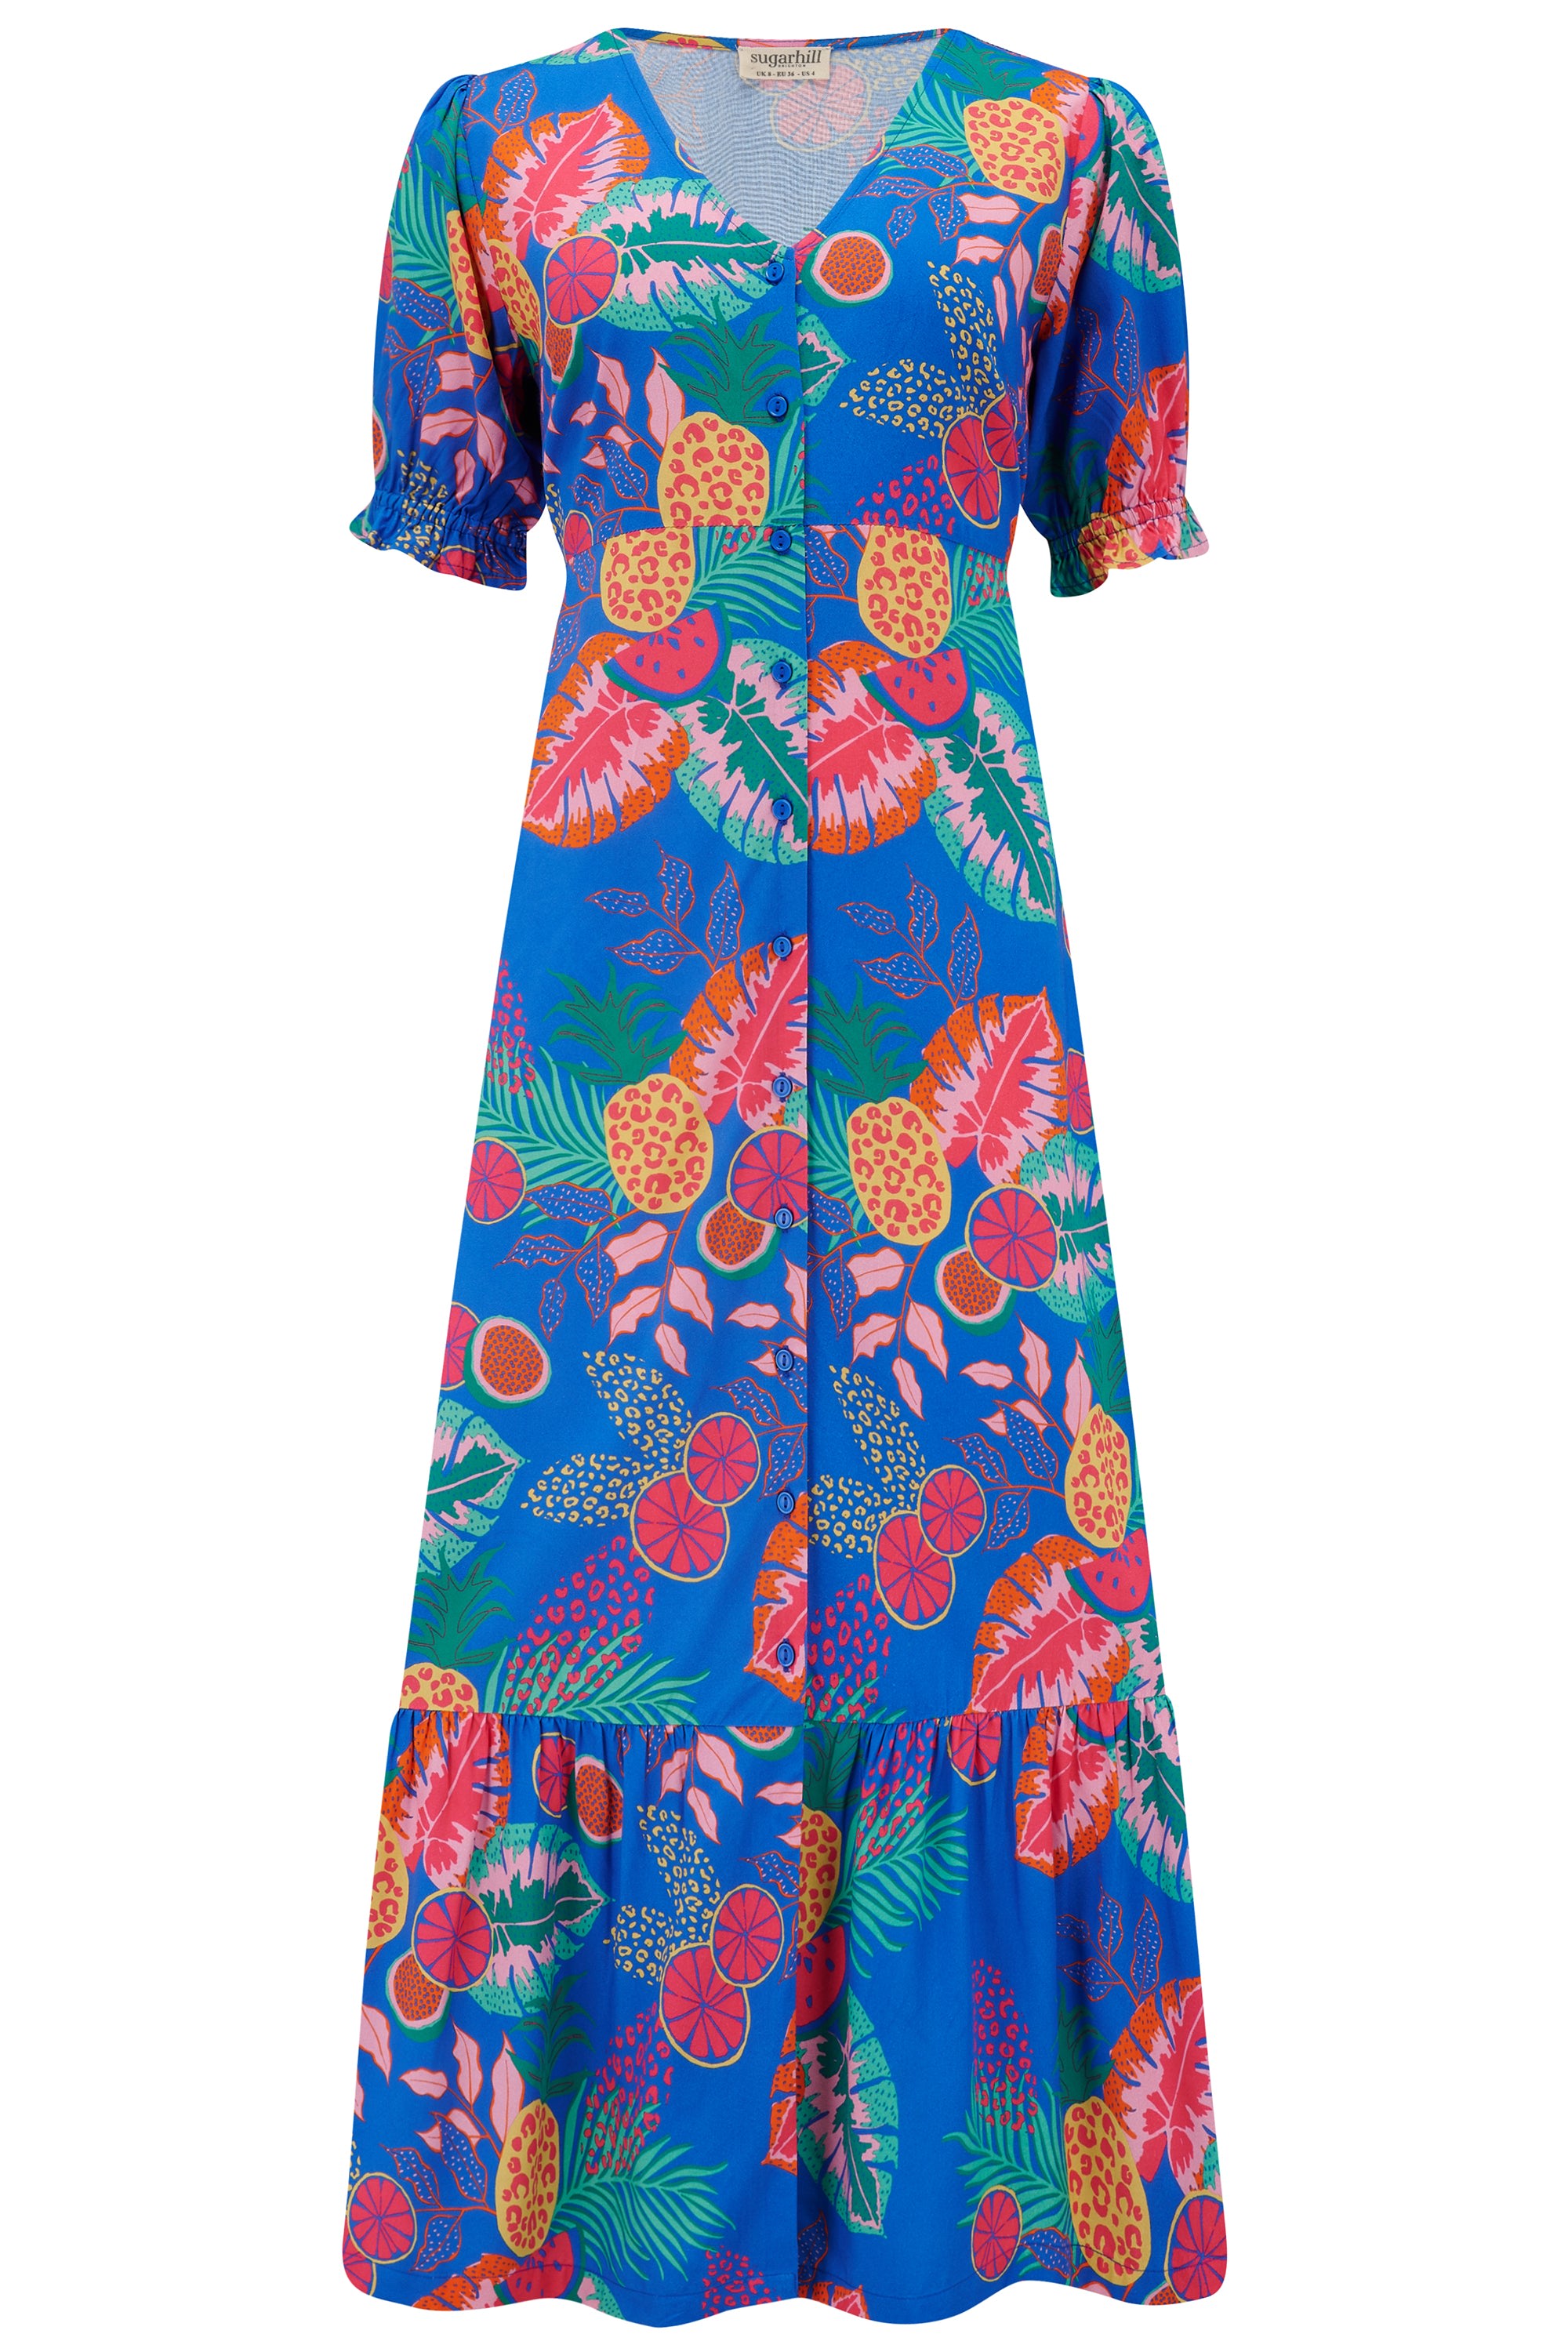 Sugarhill Brighton Women's Maddox Tiered Midi Dress Multi, Tropical Fruits In Blue